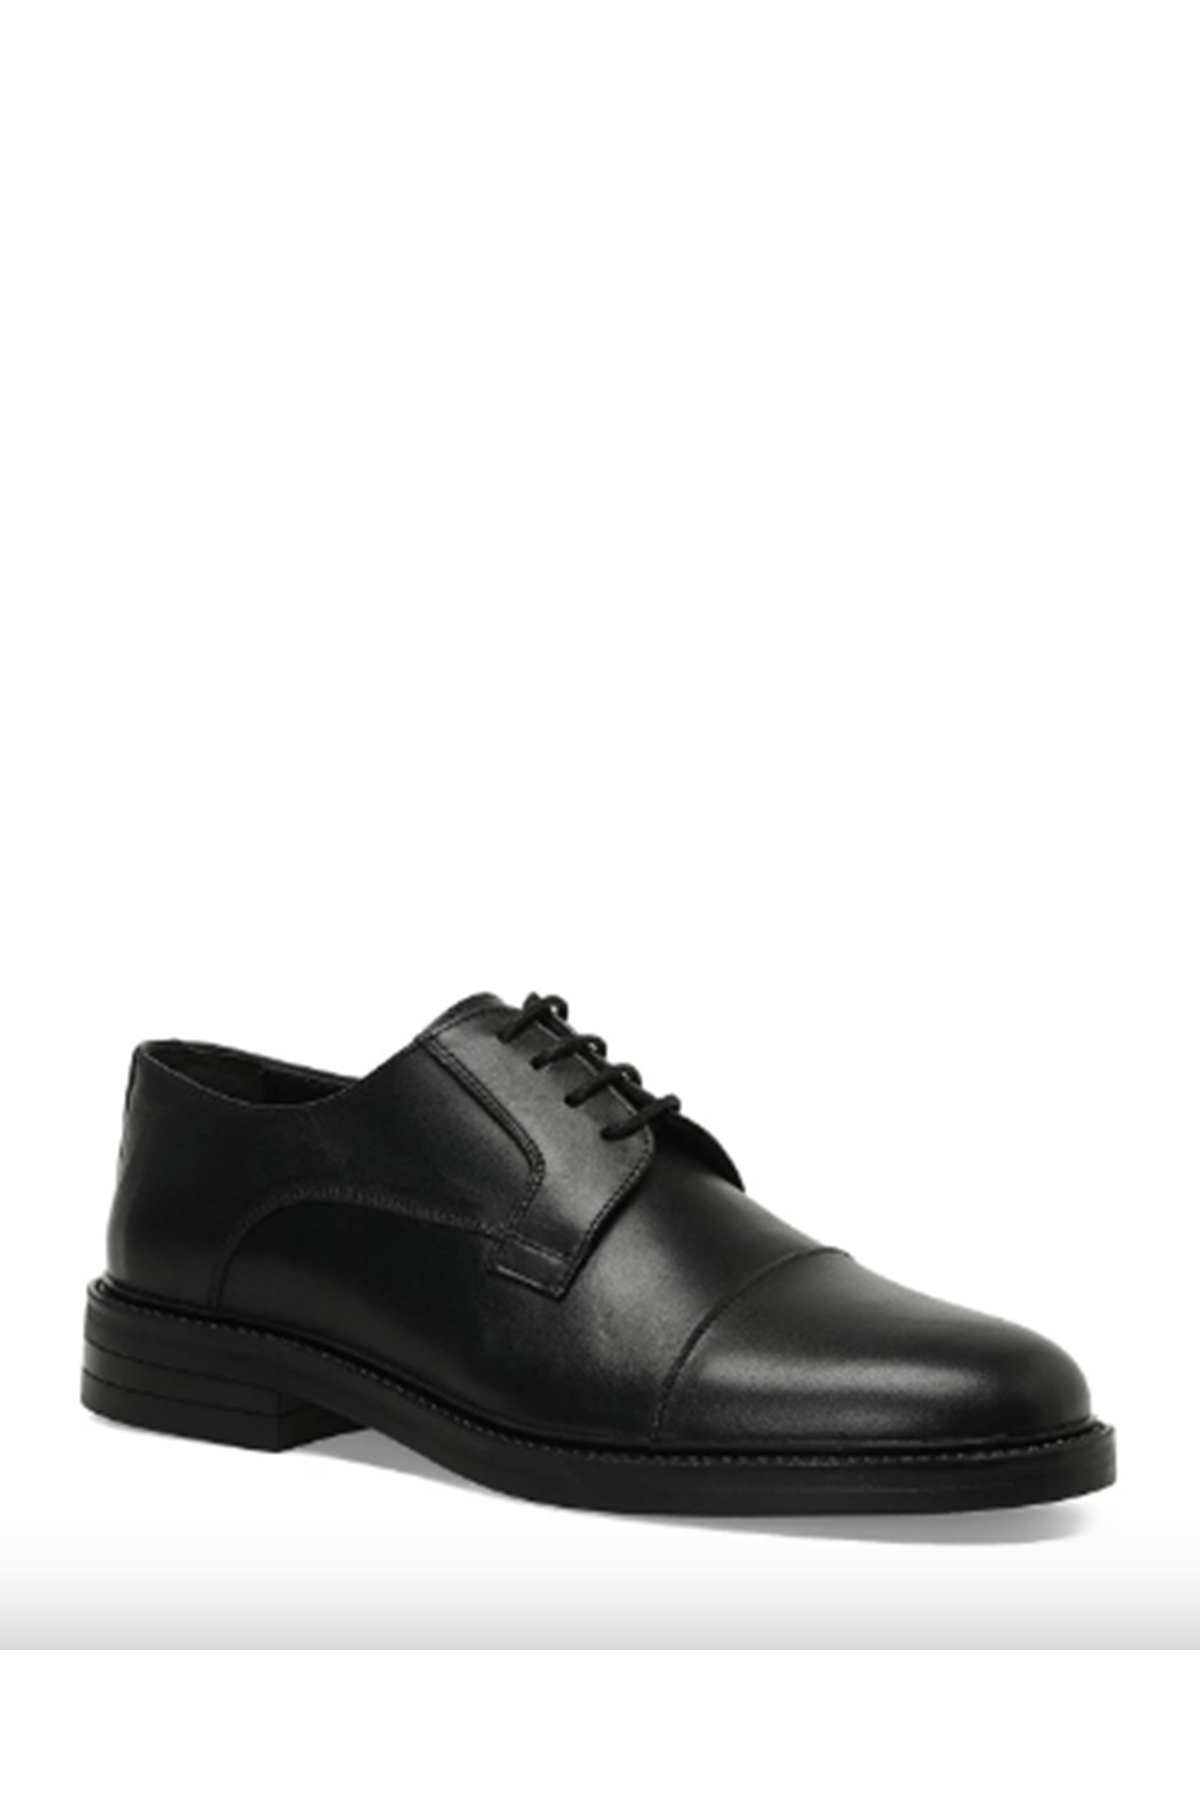 Boy Uzatan Ayakkabı Gizli Topuklu Hakiki Deri JOEY 3PR Siyah Erkek Klasik Ayakkabı MYY248